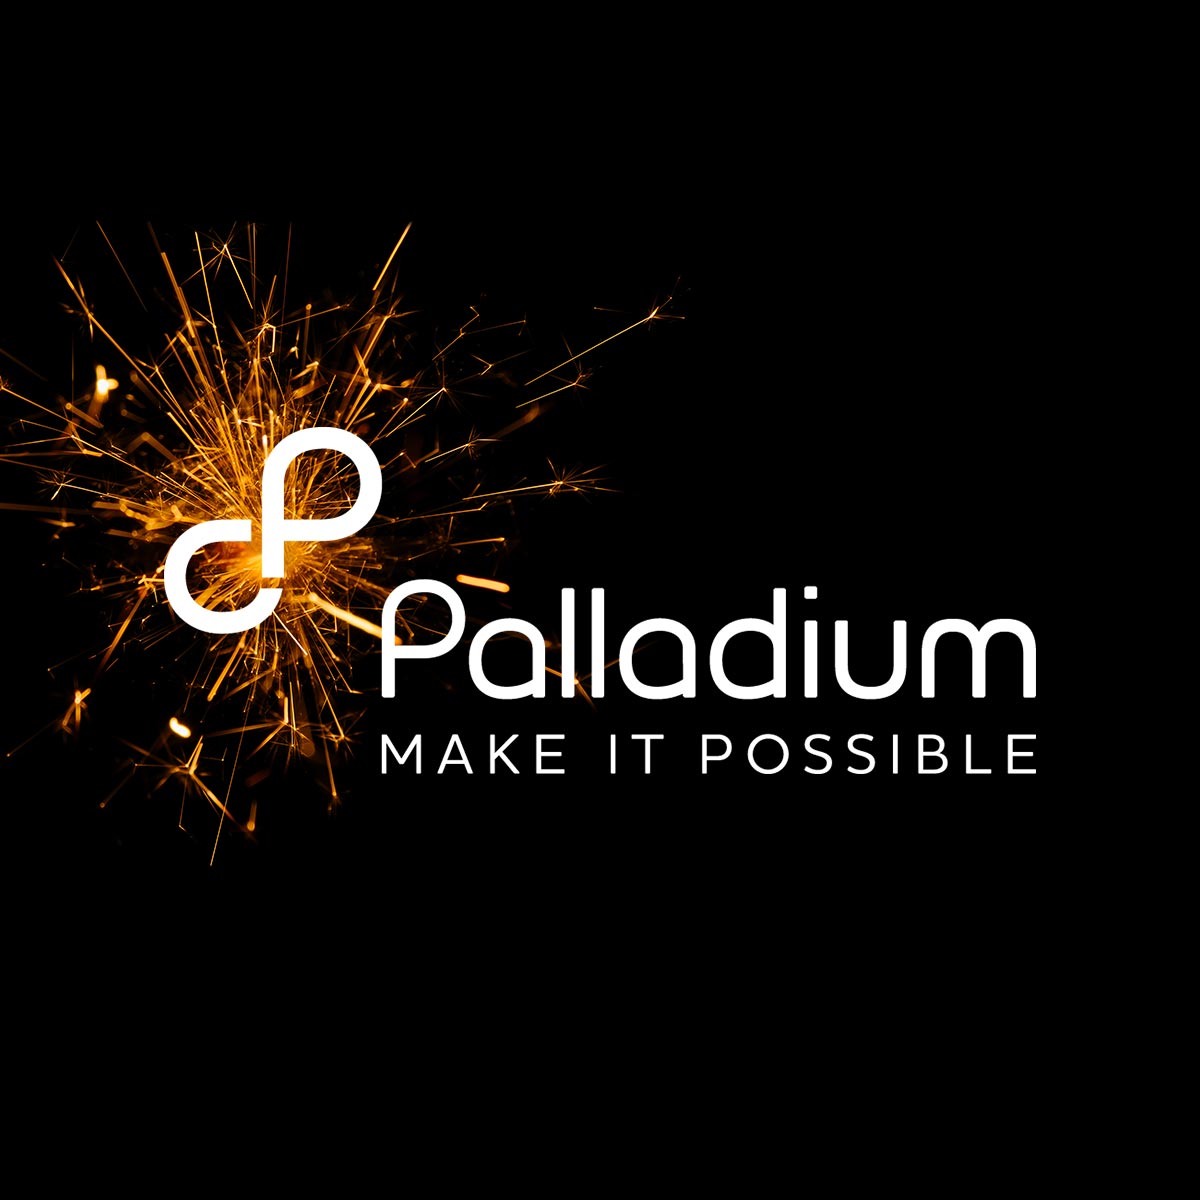 (c) Thepalladiumgroup.com